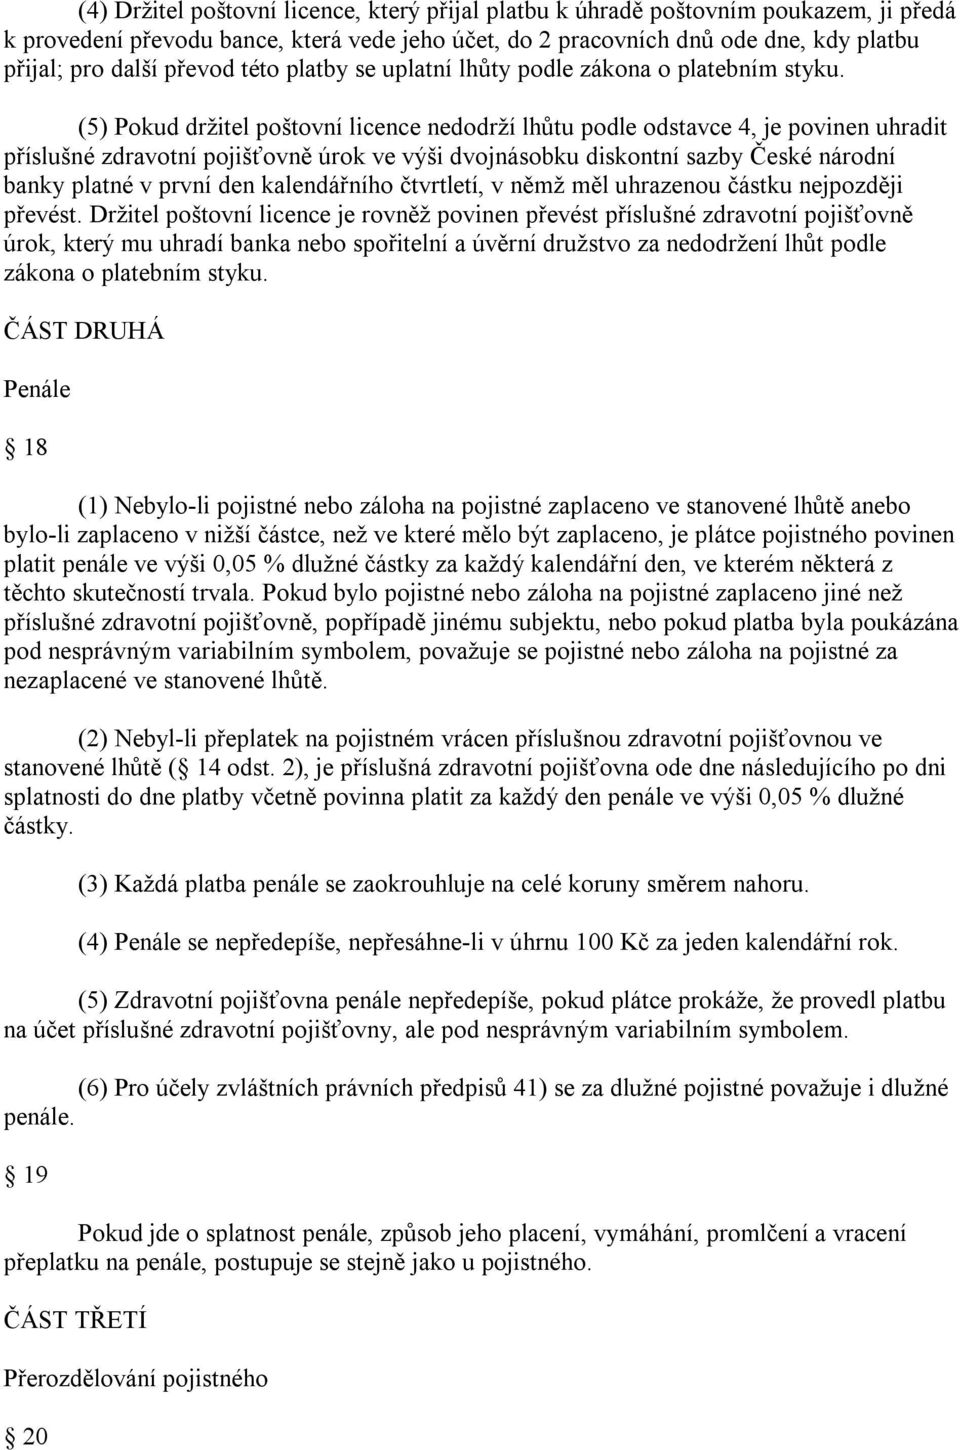 (5) Pokud držitel poštovní licence nedodrží lhůtu podle odstavce 4, je povinen uhradit příslušné zdravotní pojišťovně úrok ve výši dvojnásobku diskontní sazby České národní banky platné v první den